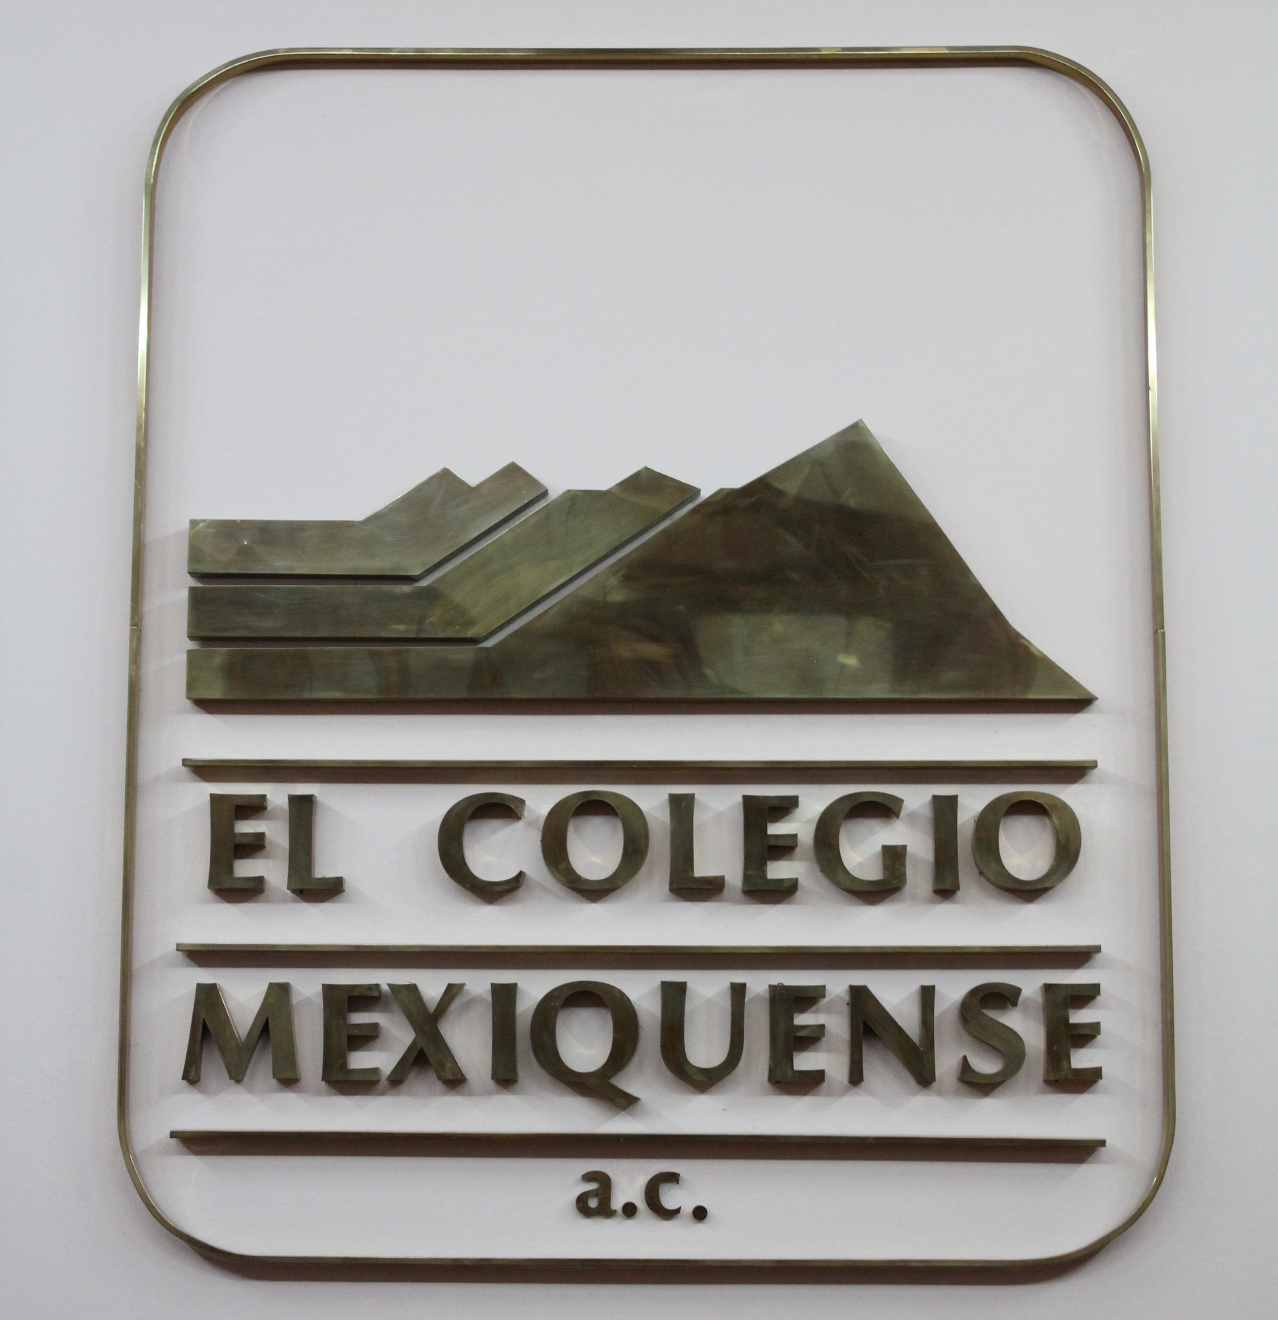 El Colegio Mexiquense, A.C.